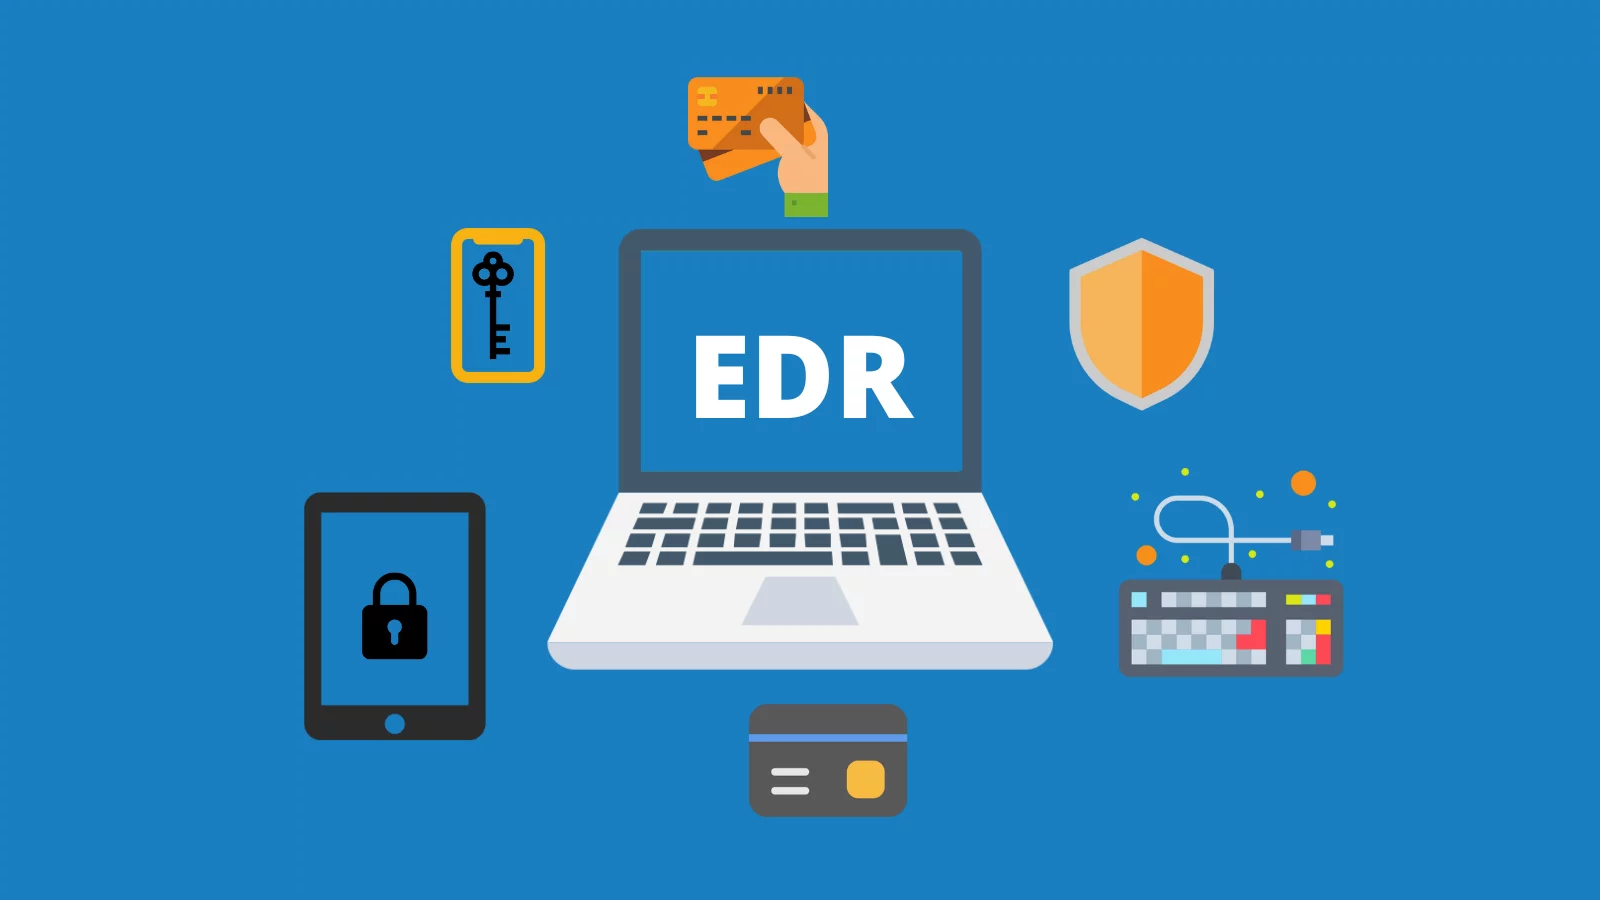 ¿Qué es un EDR y cómo se diferencia de un antivirus? La importancia de los EDR en una empresa